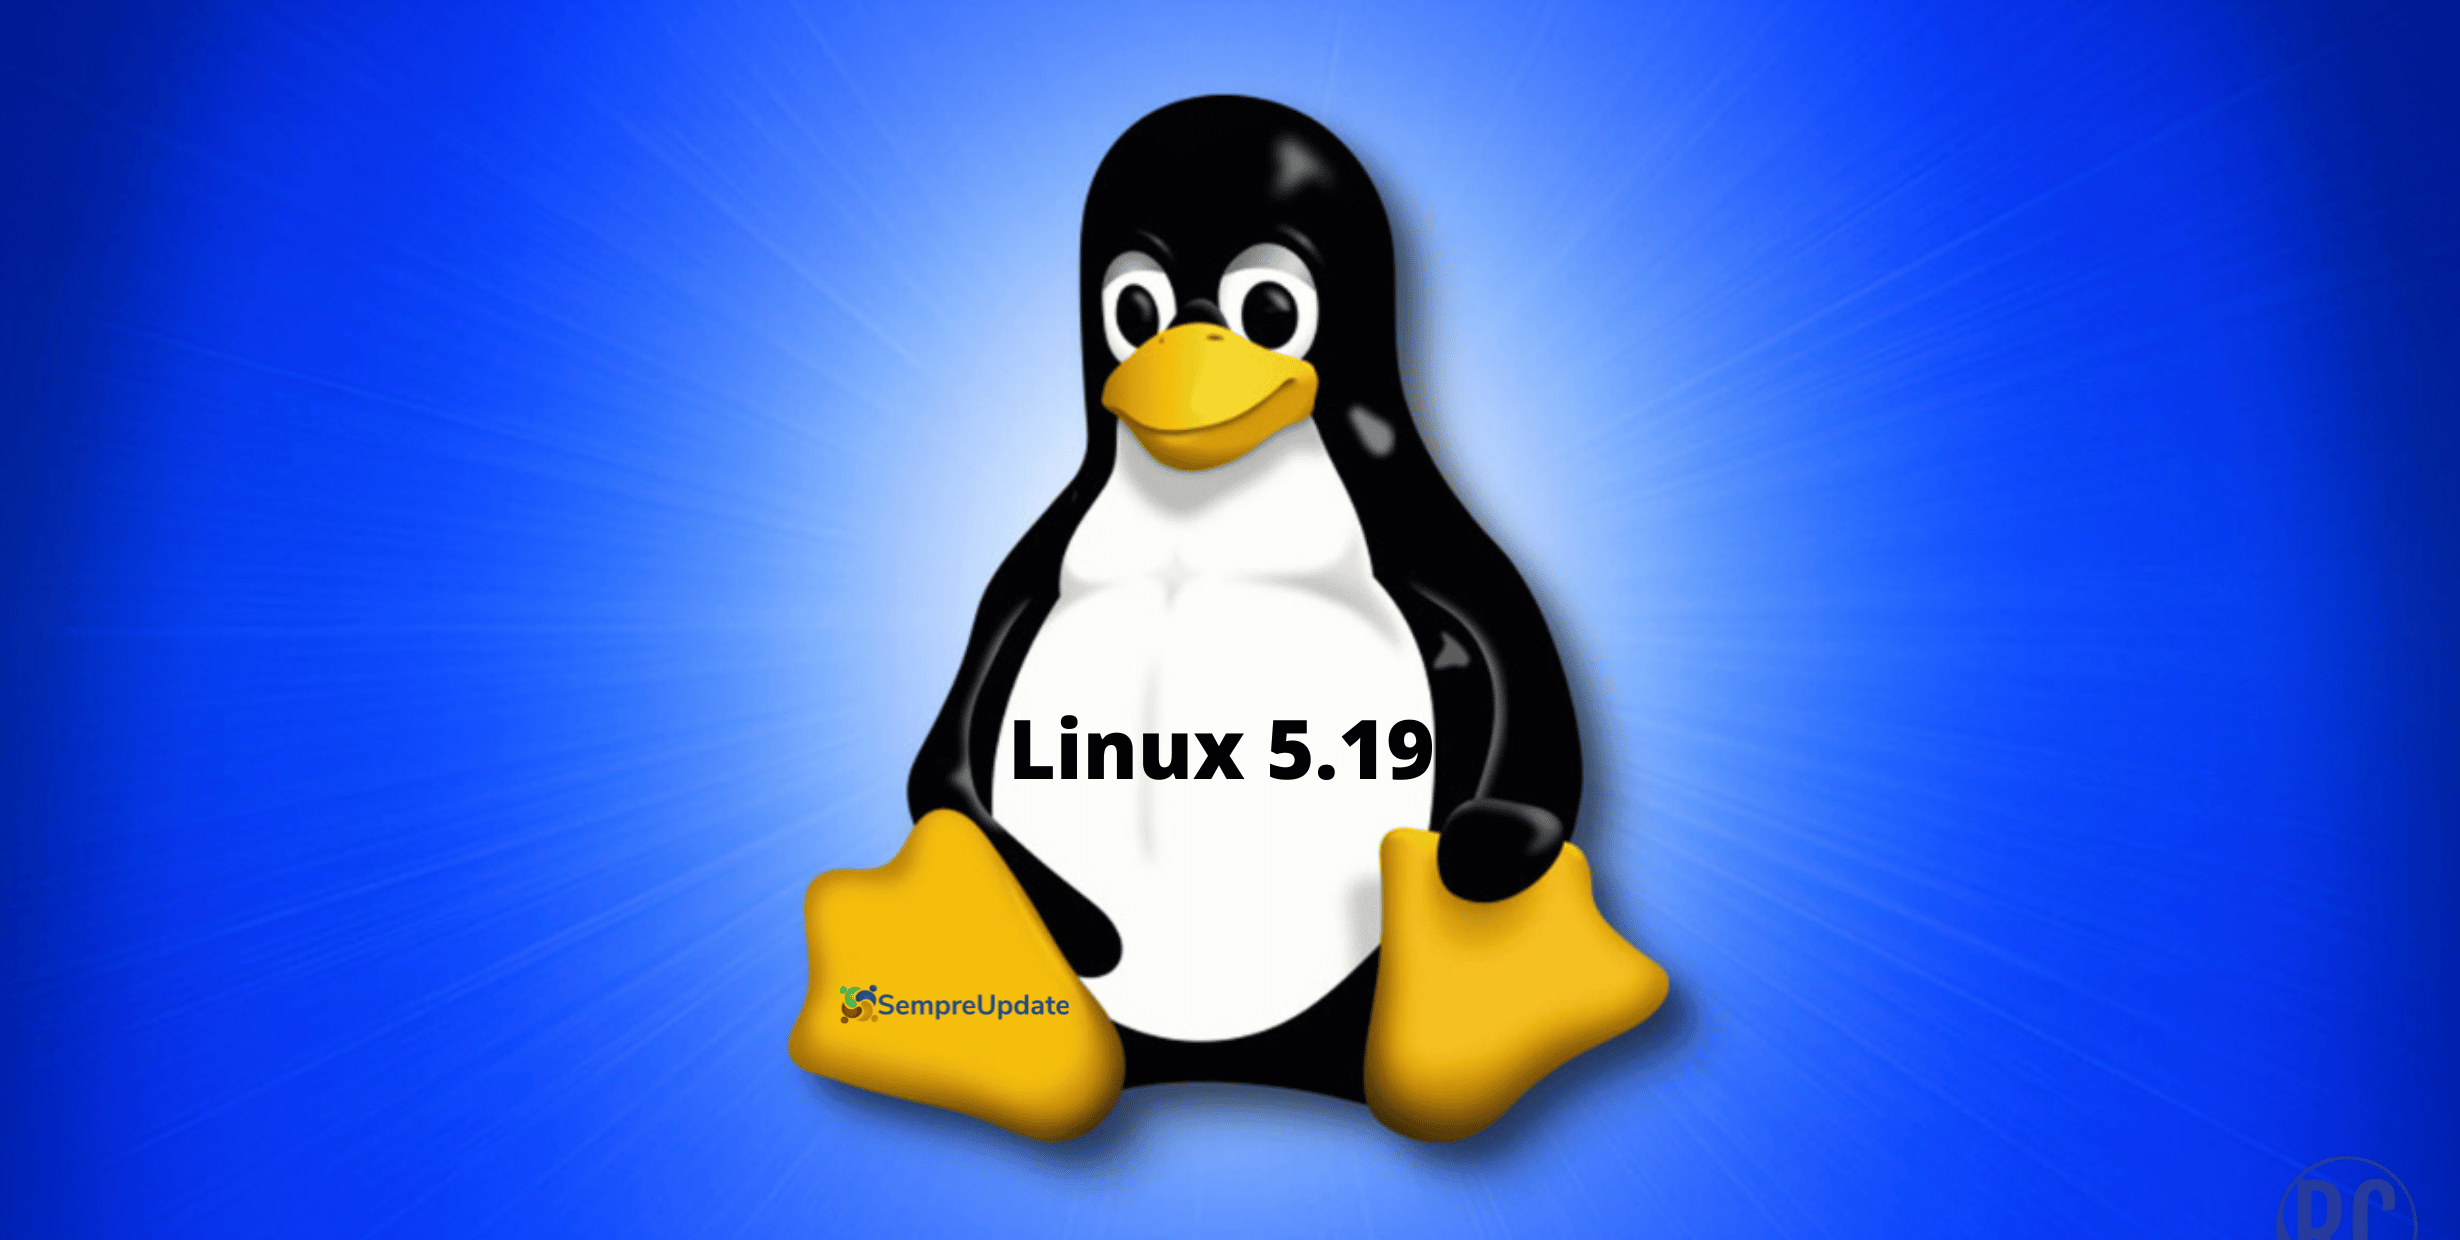 Linux 5.19 chega ao fim da vida útil e usuários devem atualizar para Linux 6.0